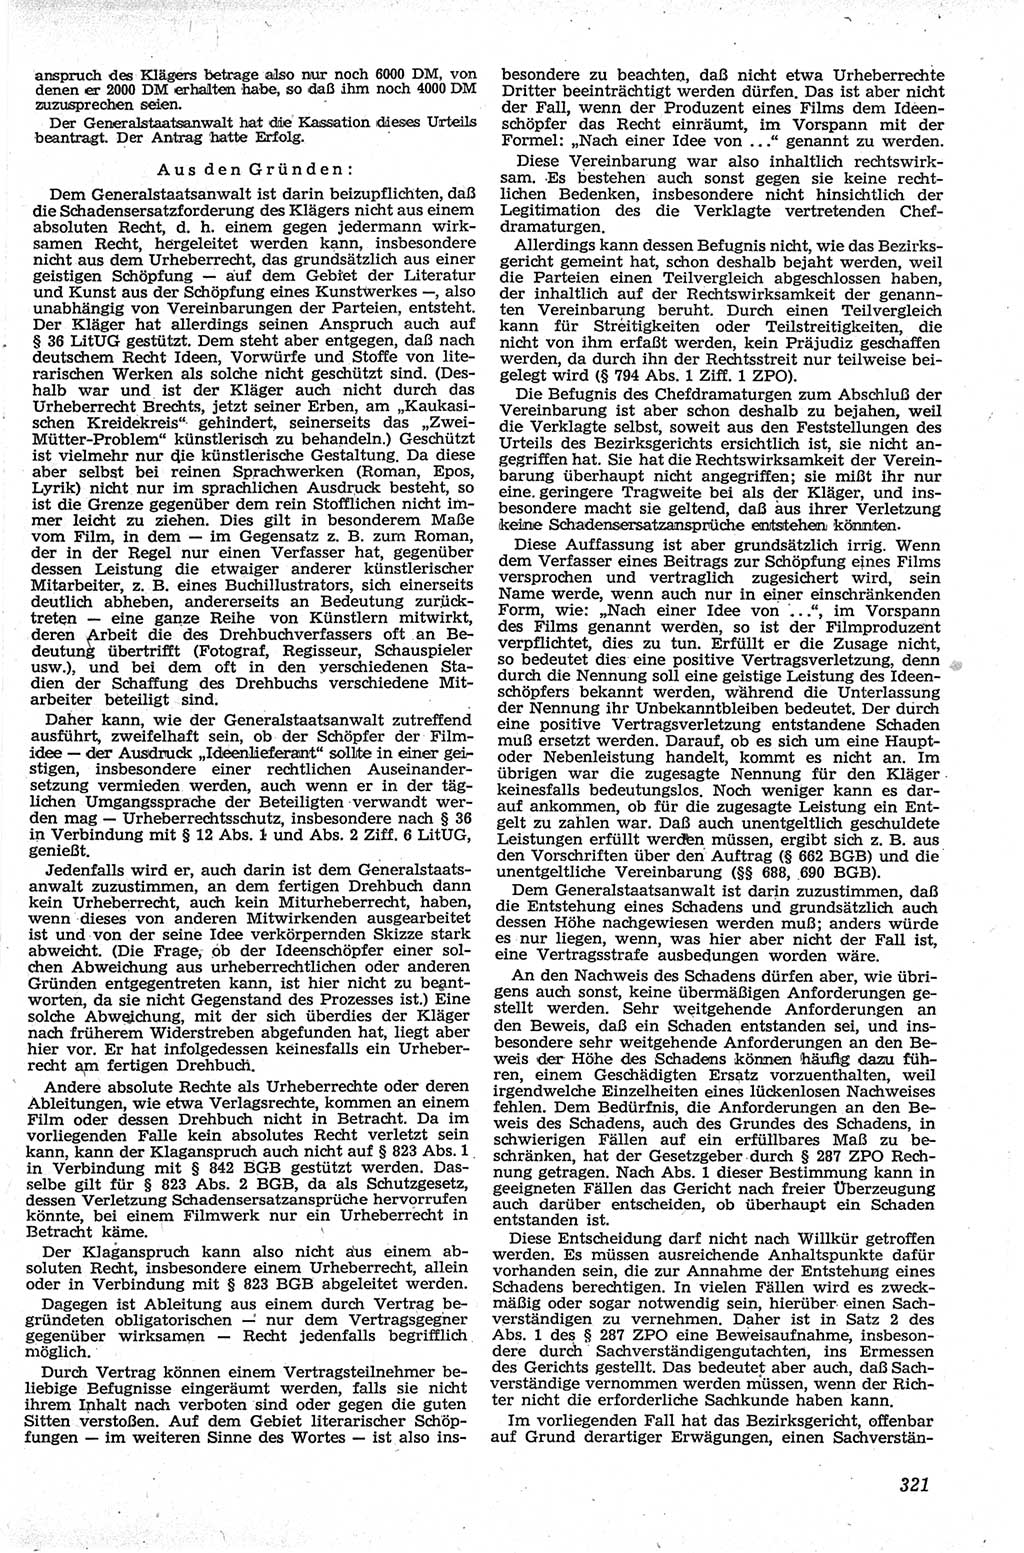 Neue Justiz (NJ), Zeitschrift für Recht und Rechtswissenschaft [Deutsche Demokratische Republik (DDR)], 13. Jahrgang 1959, Seite 321 (NJ DDR 1959, S. 321)